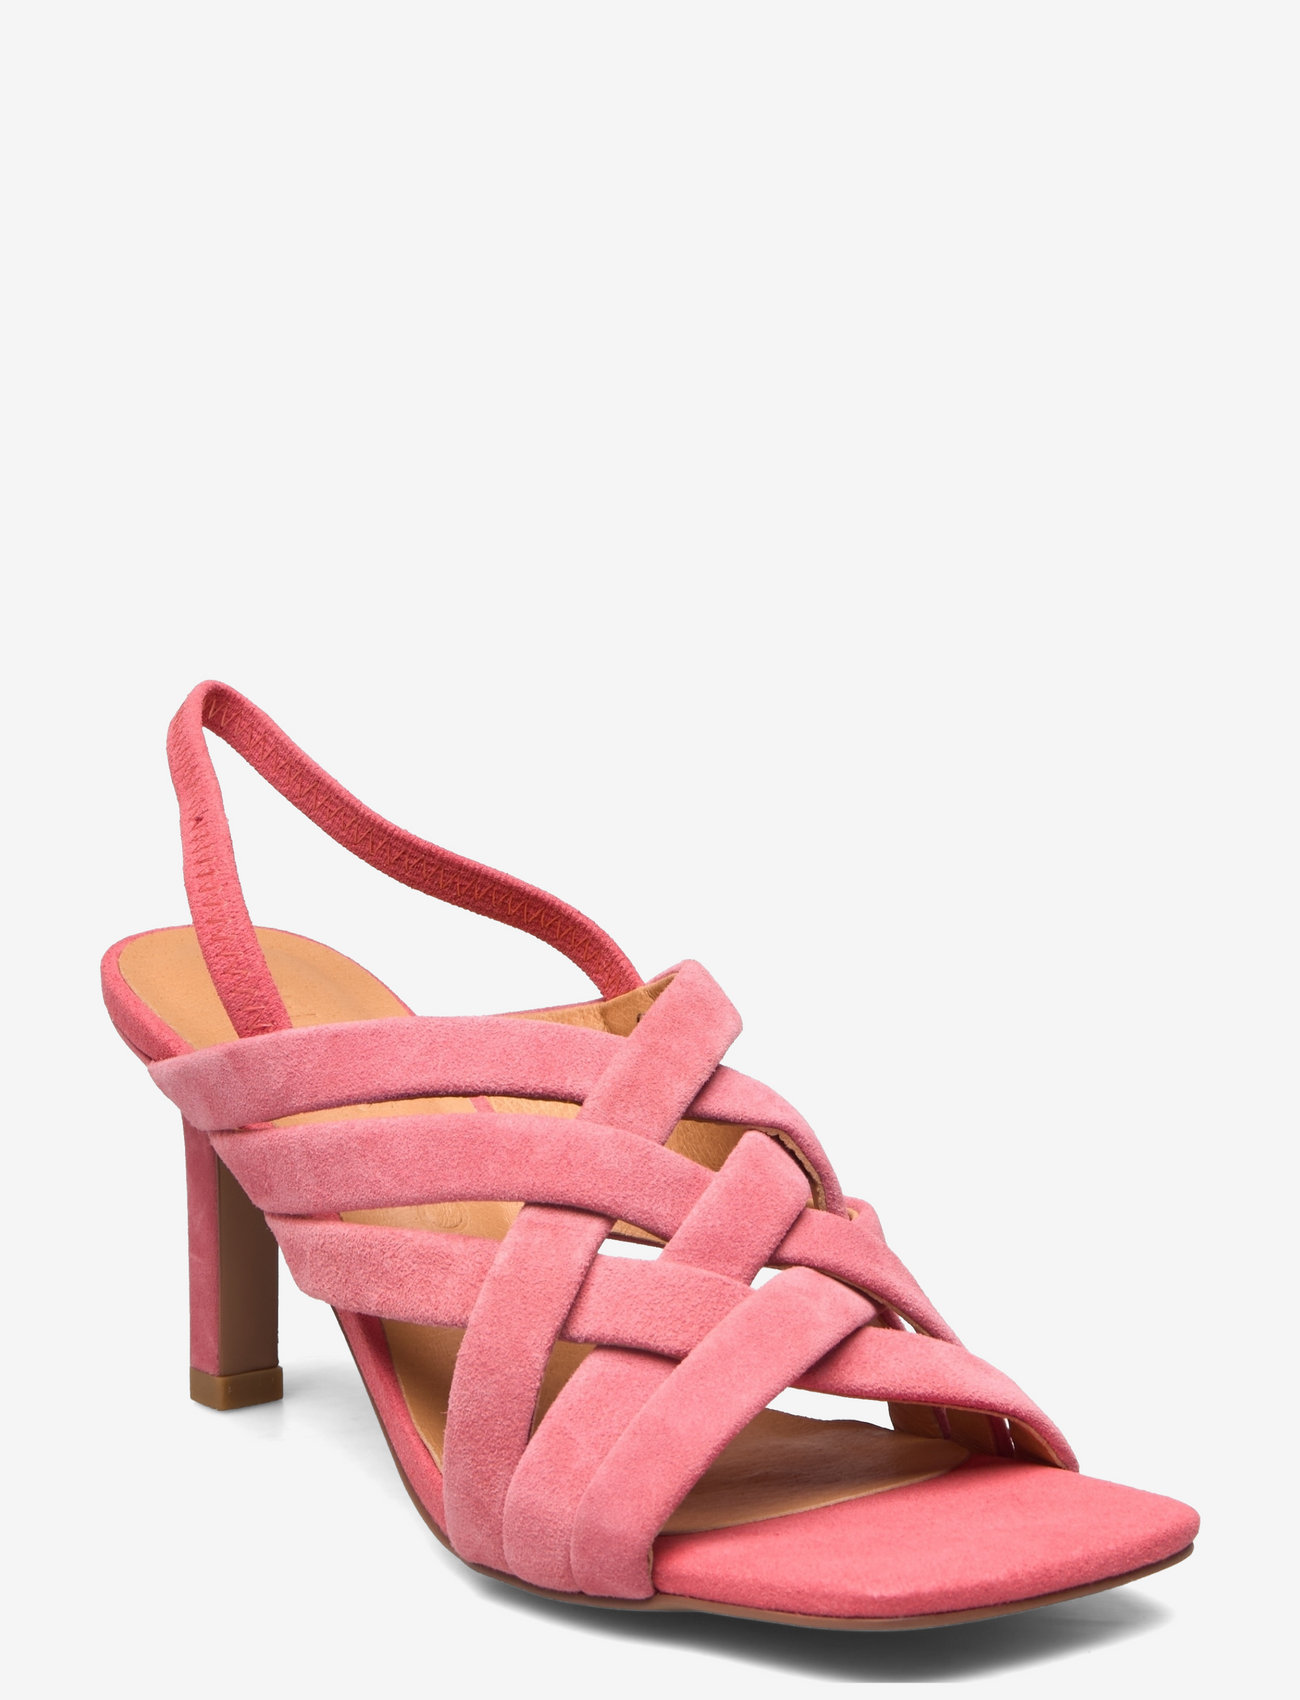 Sofie Schnoor - Stiletto - odzież imprezowa w cenach outletowych - bright pink - 0